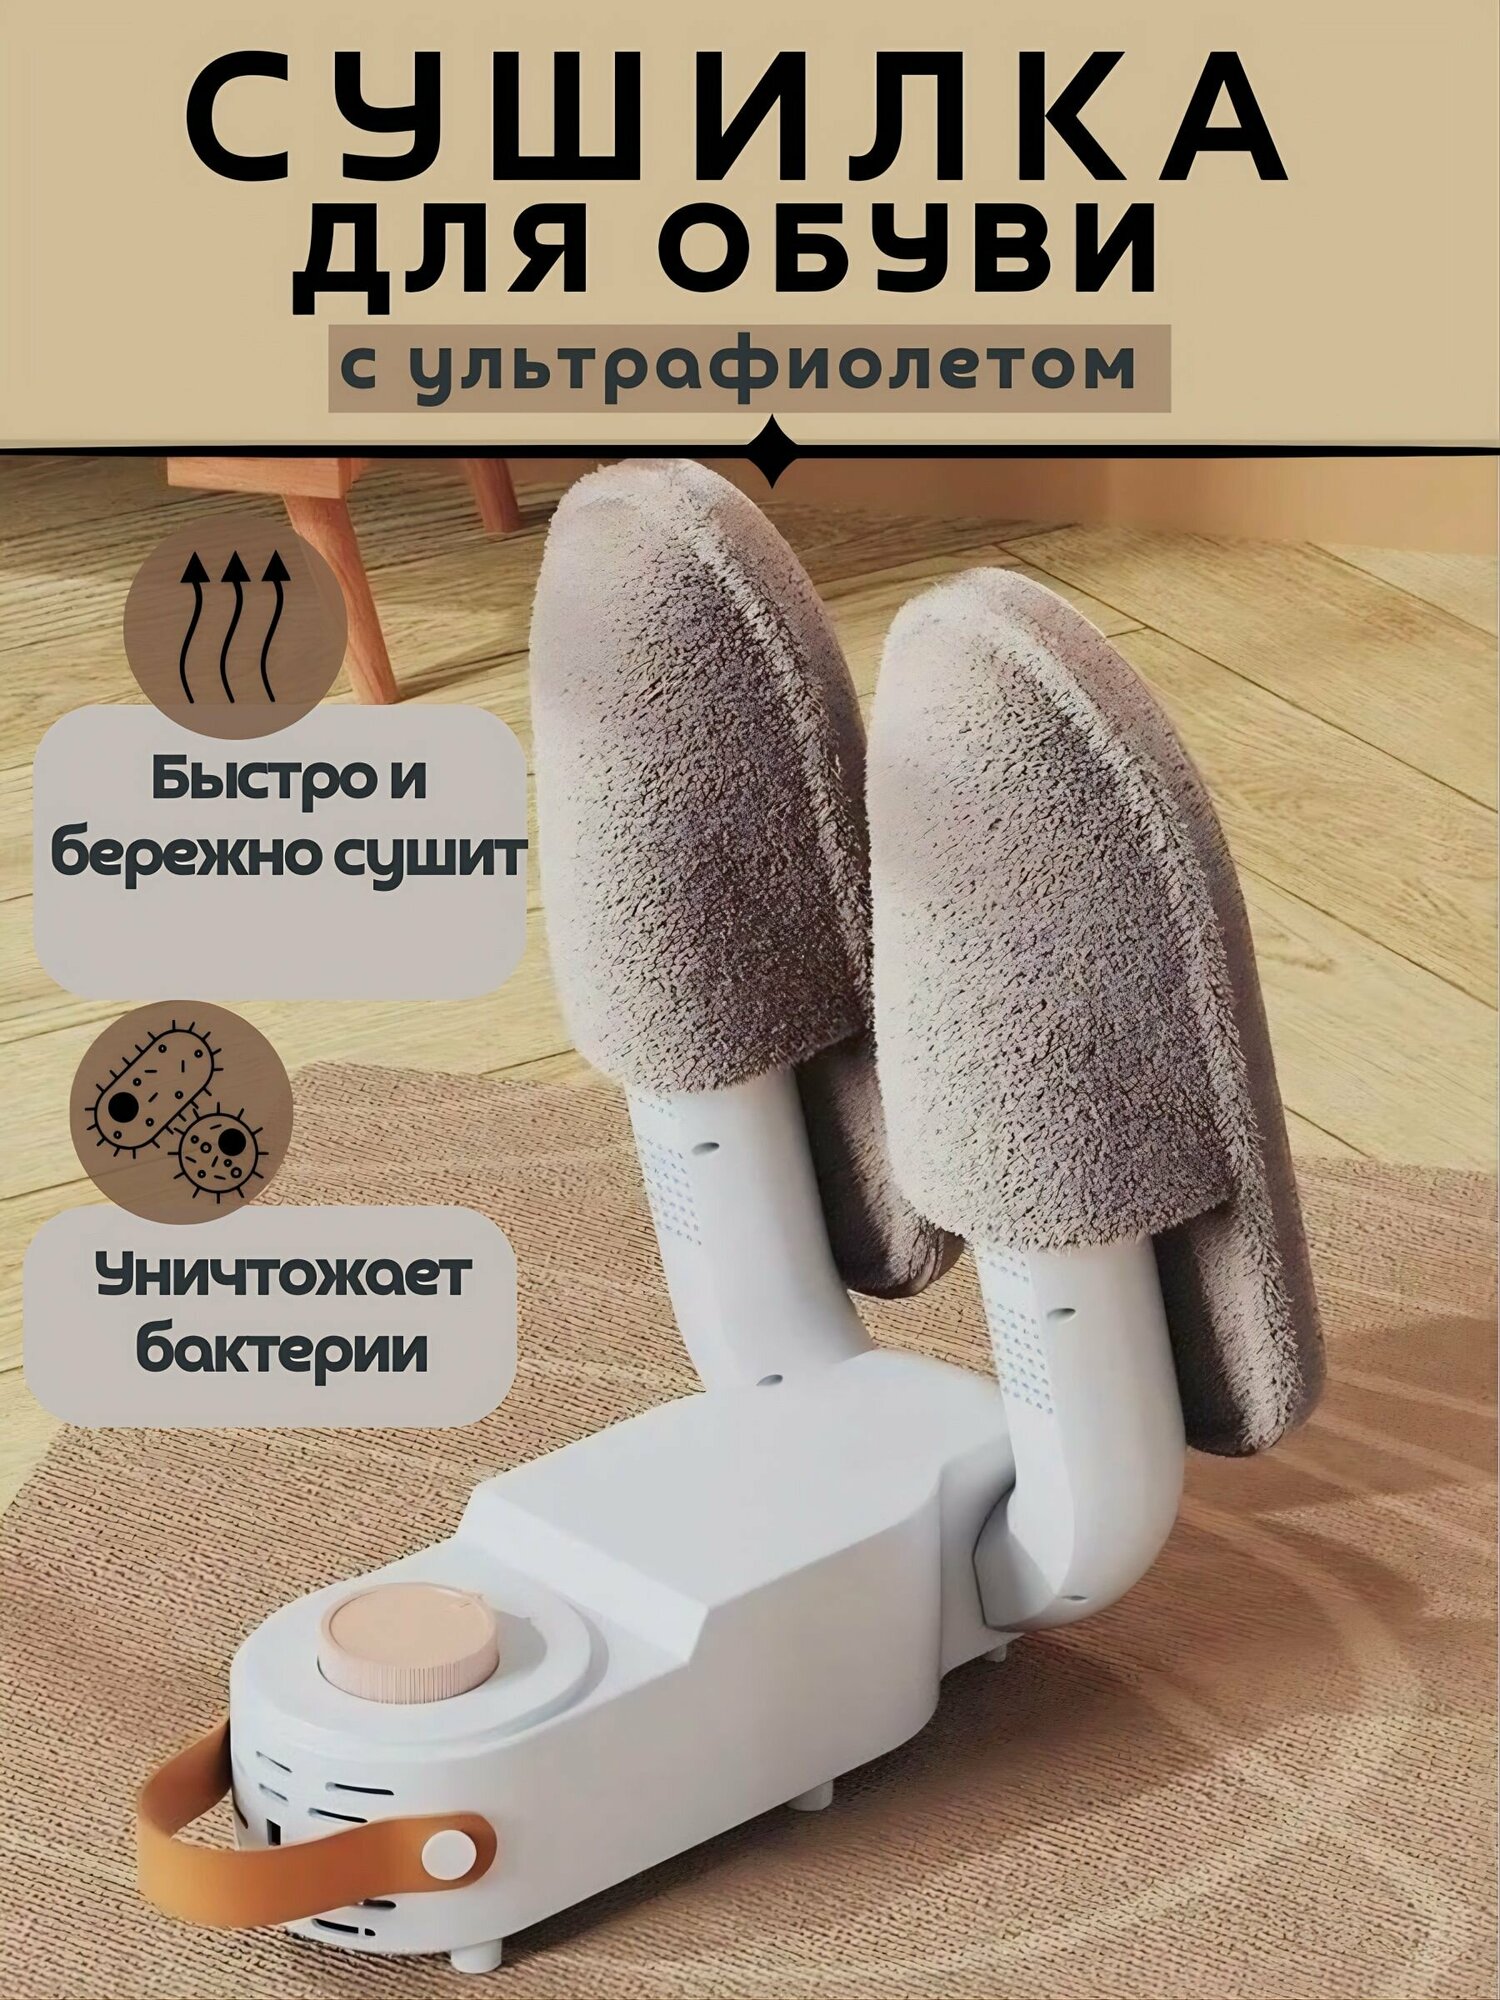 Сушилка для обуви электрическая Электросушилка для перчаток с ультрафиолетом Сушит и уничтожает грибки, бактерии и неприятный запах в обуви